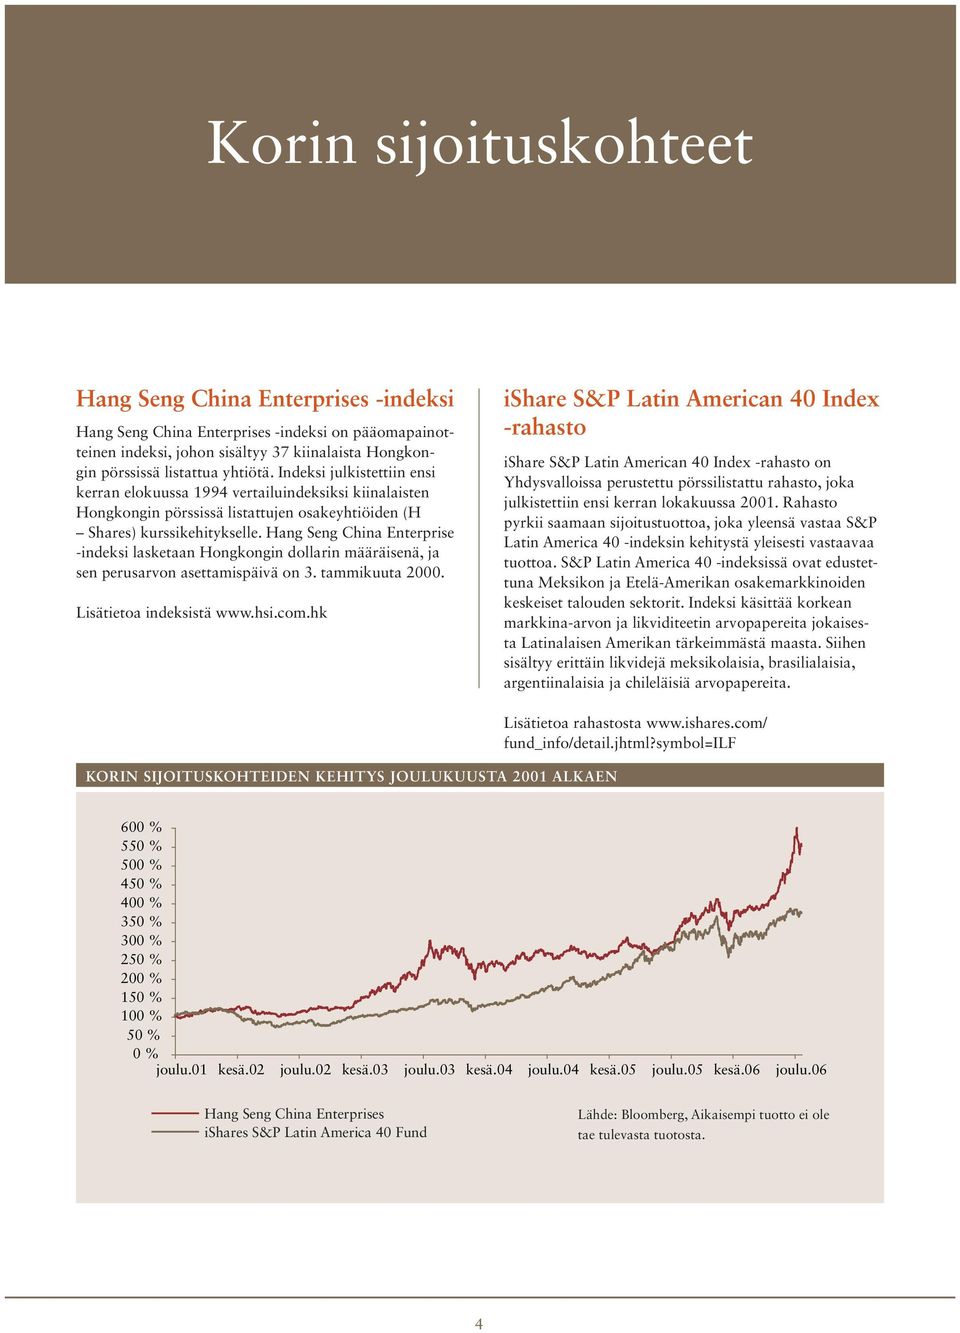 Hang Seng China Enterprise -indeksi lasketaan Hongkongin dollarin määräisenä, ja sen perusarvon asettamispäivä on 3. tammikuuta 2000. Lisätietoa indeksistä www.hsi.com.